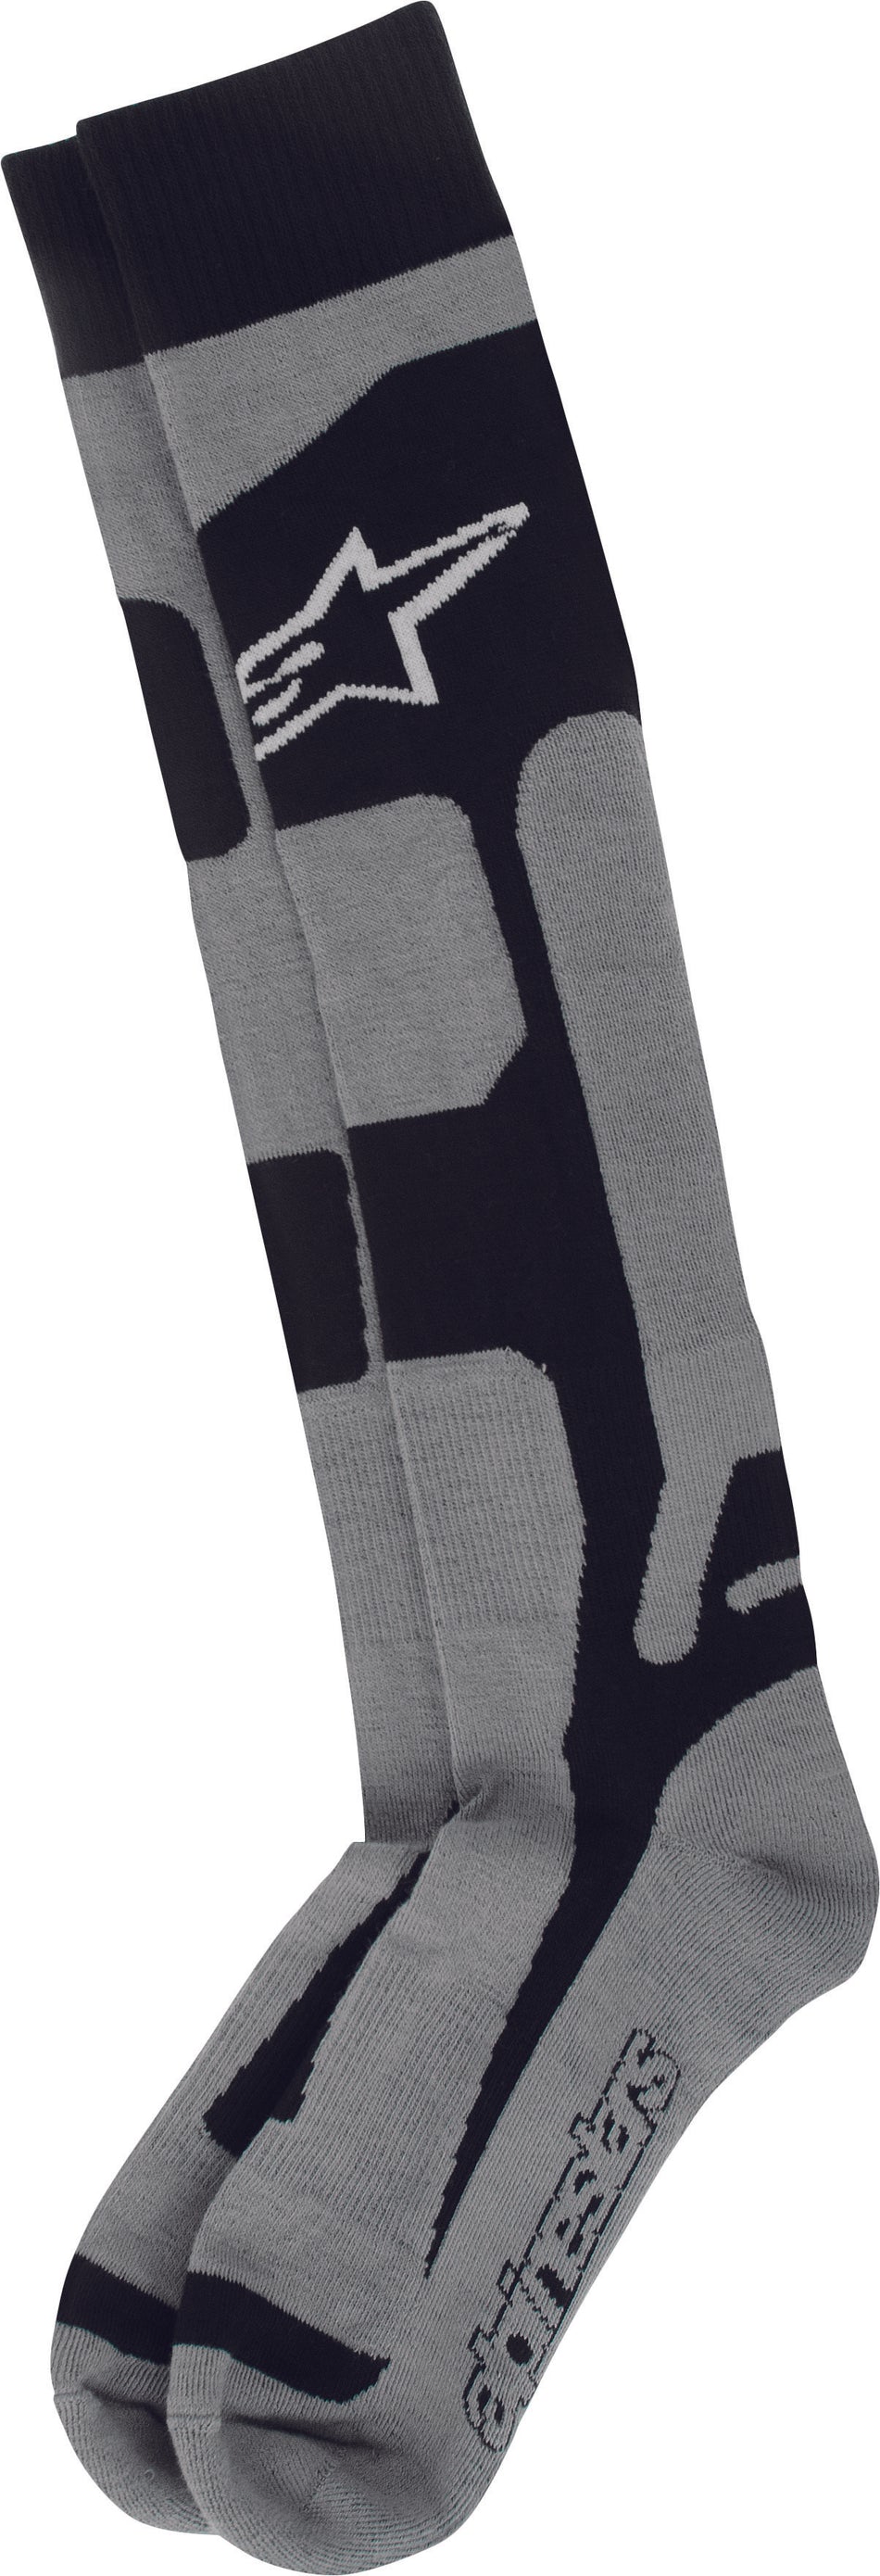 ALPINESTARS Tech Coolmax Socks Black Lg-2x 4702114-107-L/XL